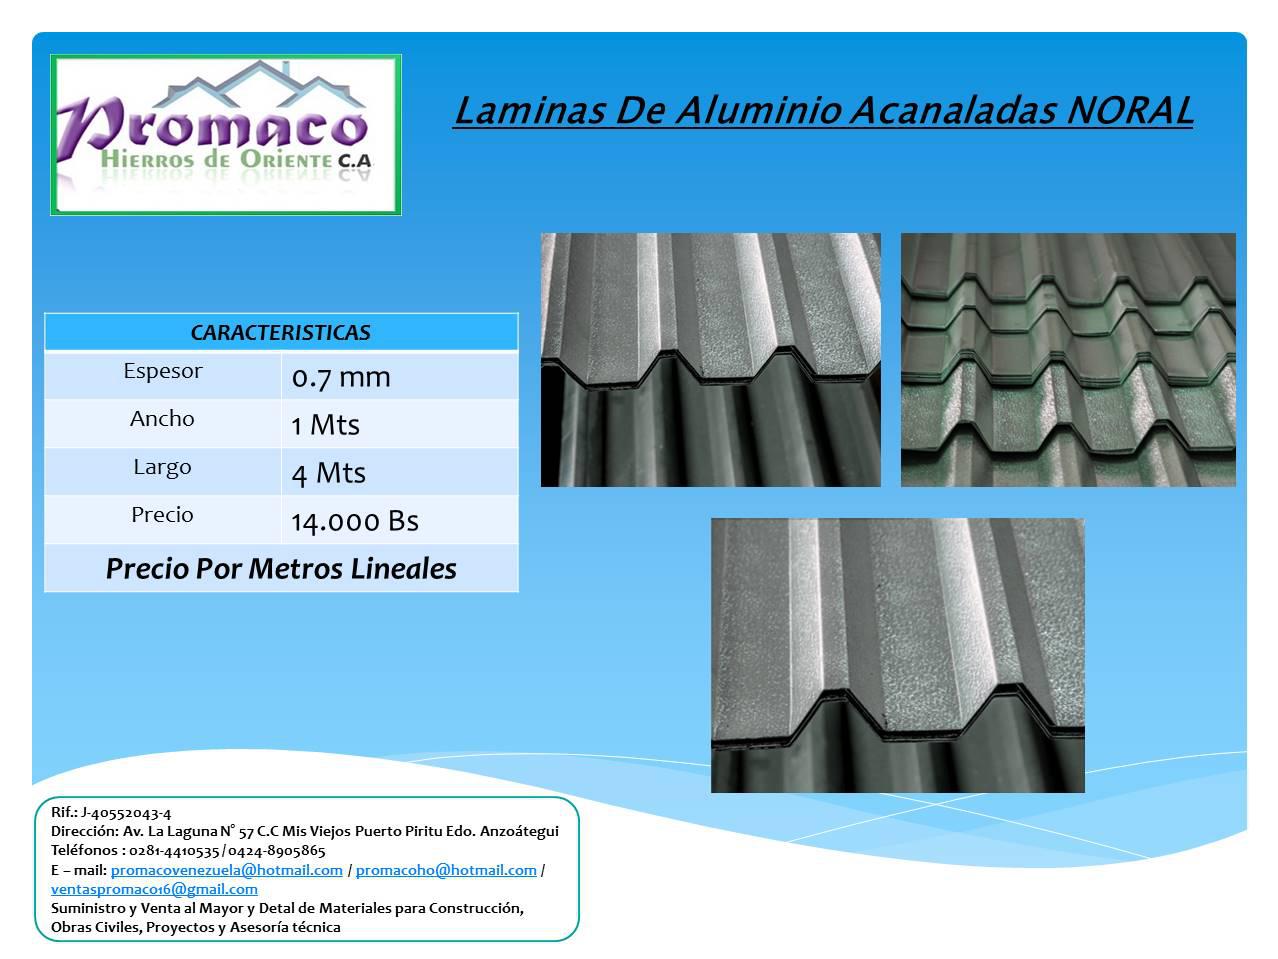 Laminas de Aluminio Acanaladas Noral 4 Metros